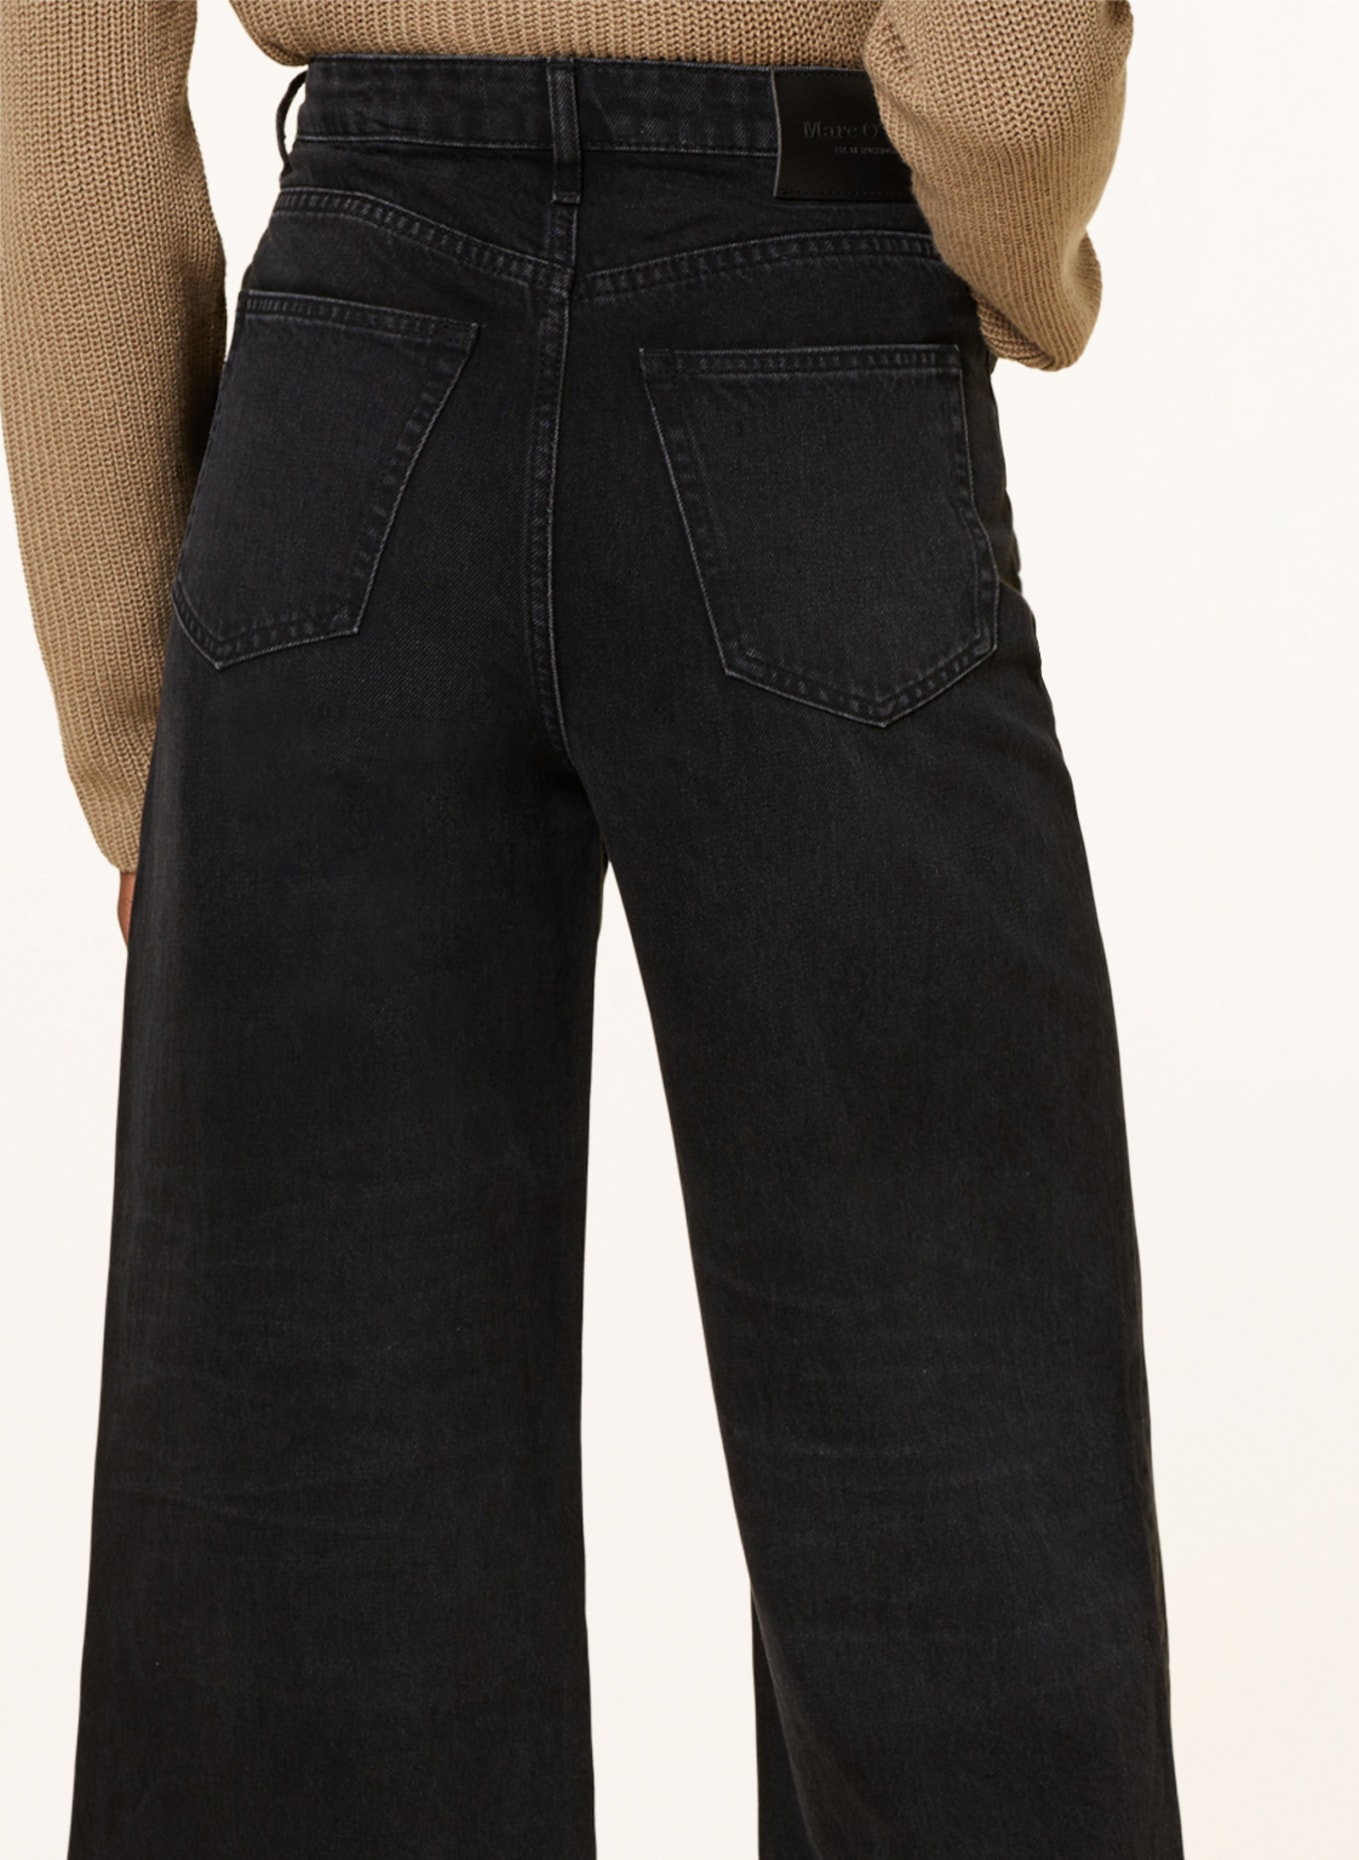 Marc O'Polo 7/8 jeans, Color: 073 Authentic black denim wash (Image 5)